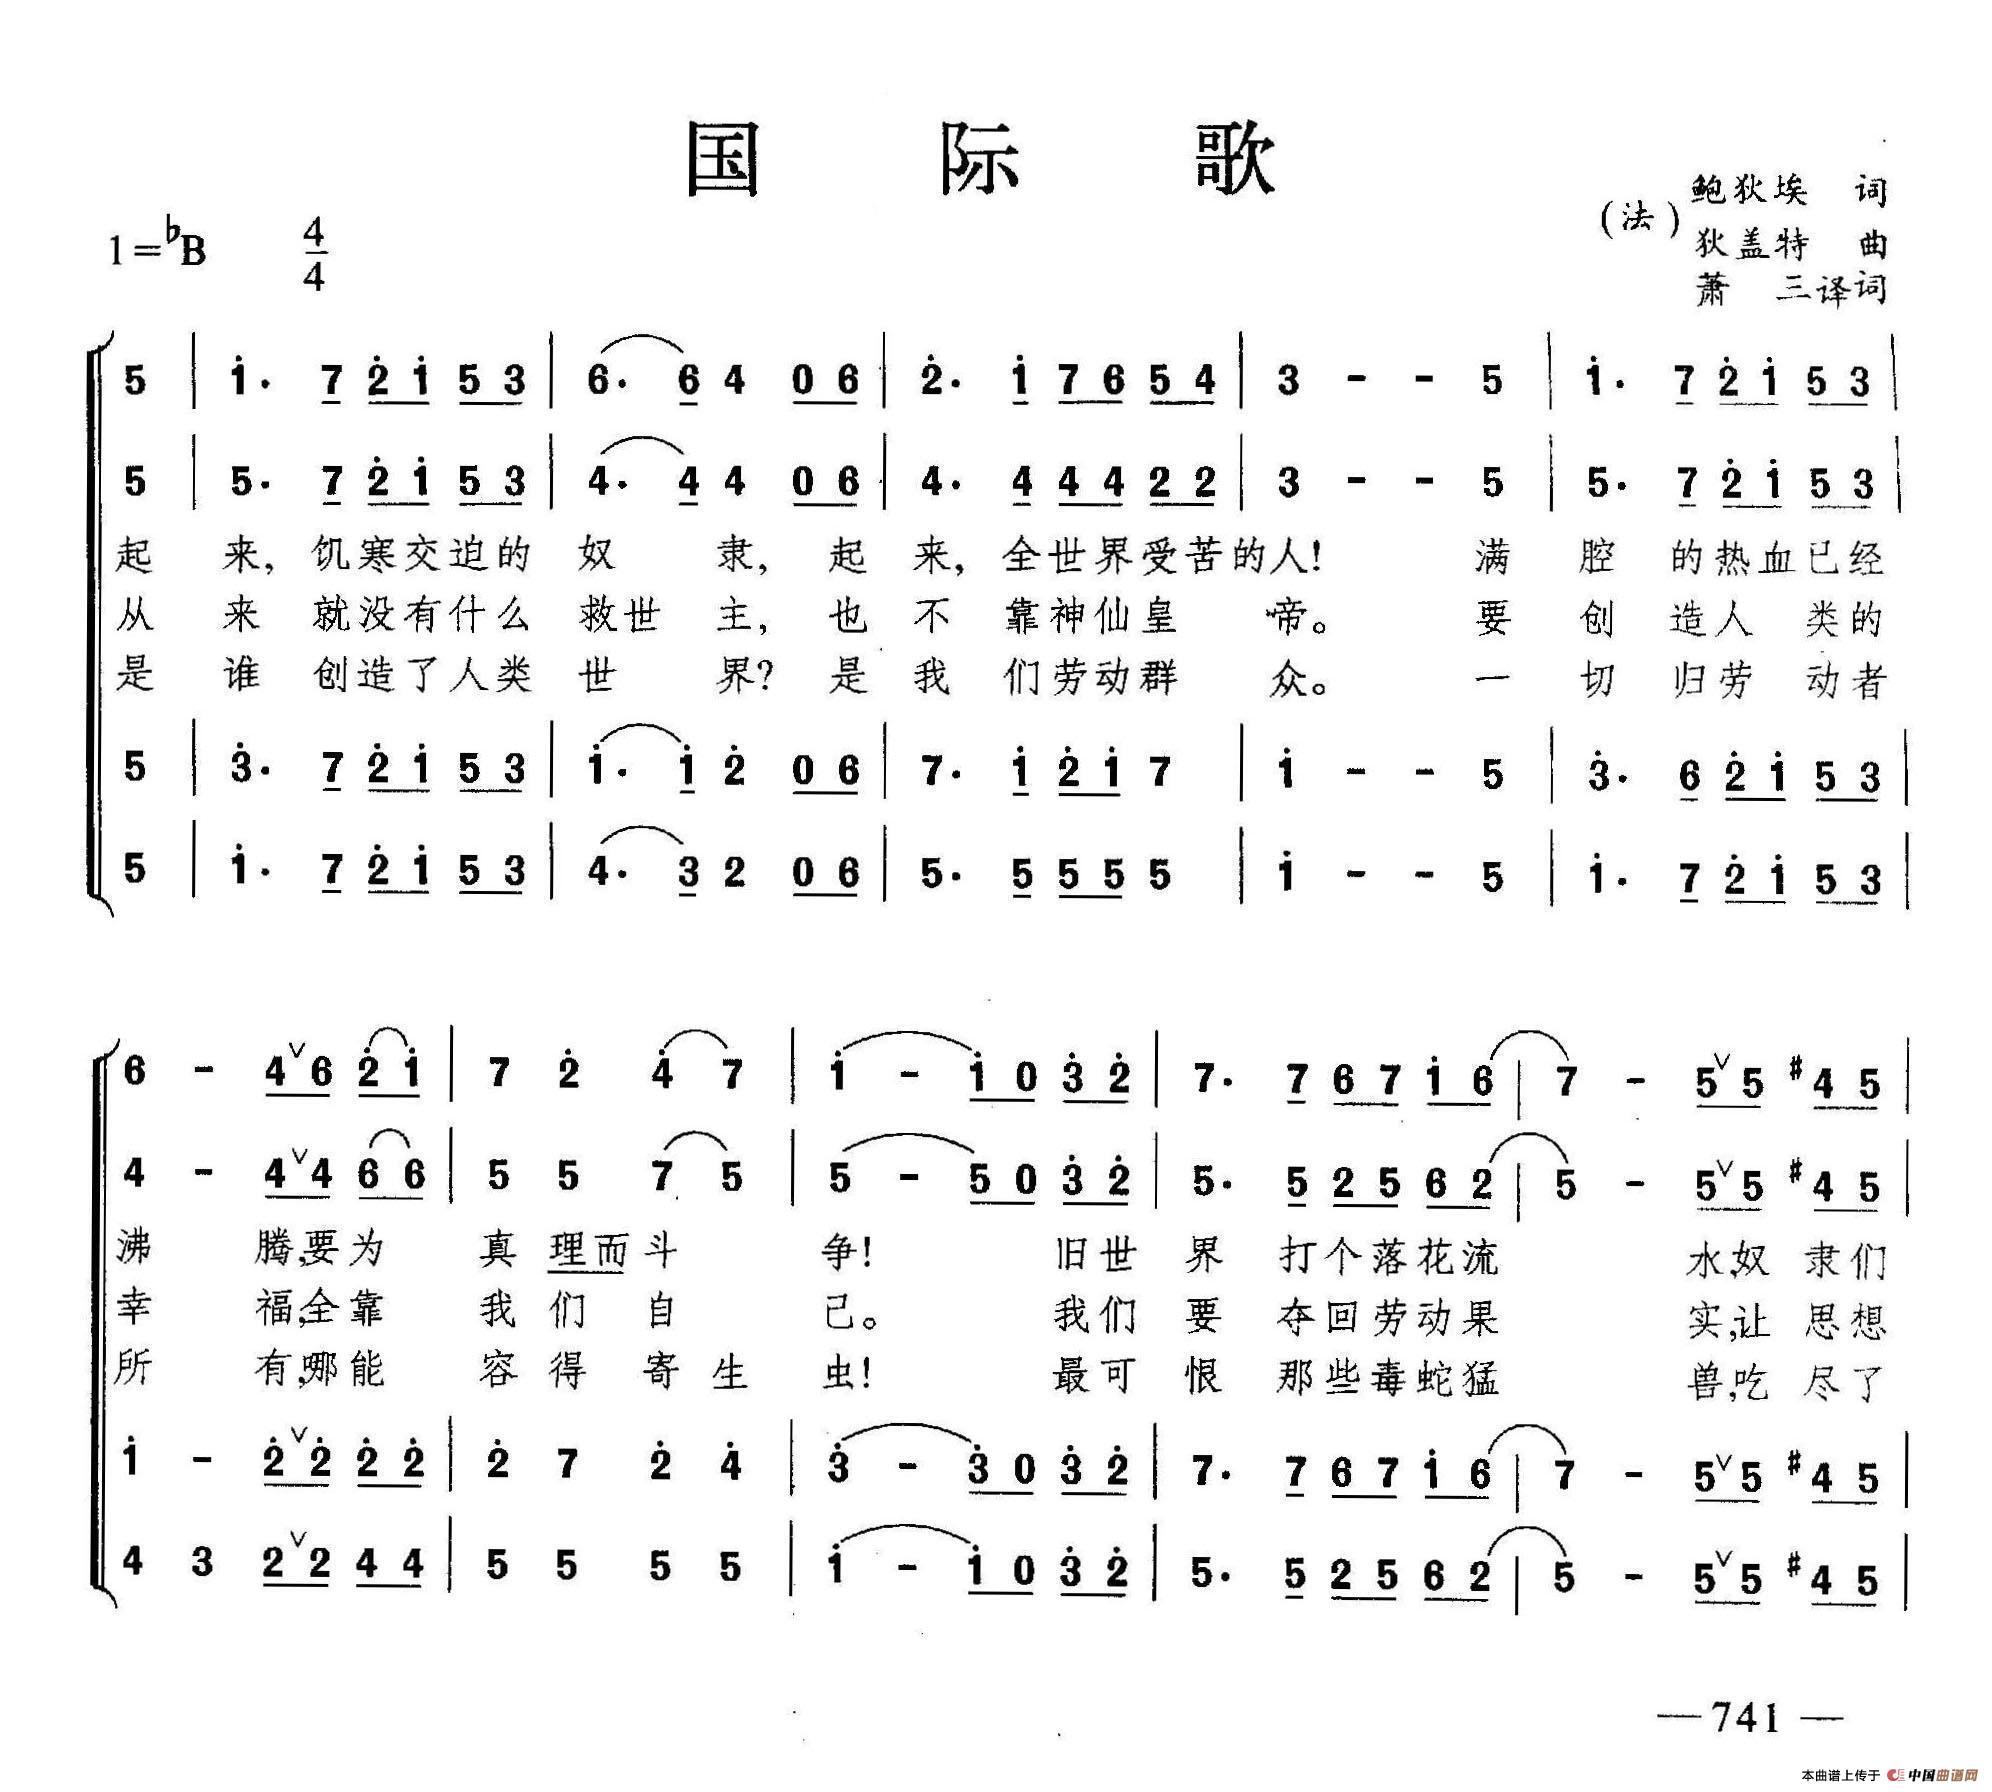 《国际歌》中语歌词翻译人考——纪念国际歌诞生130周年特企